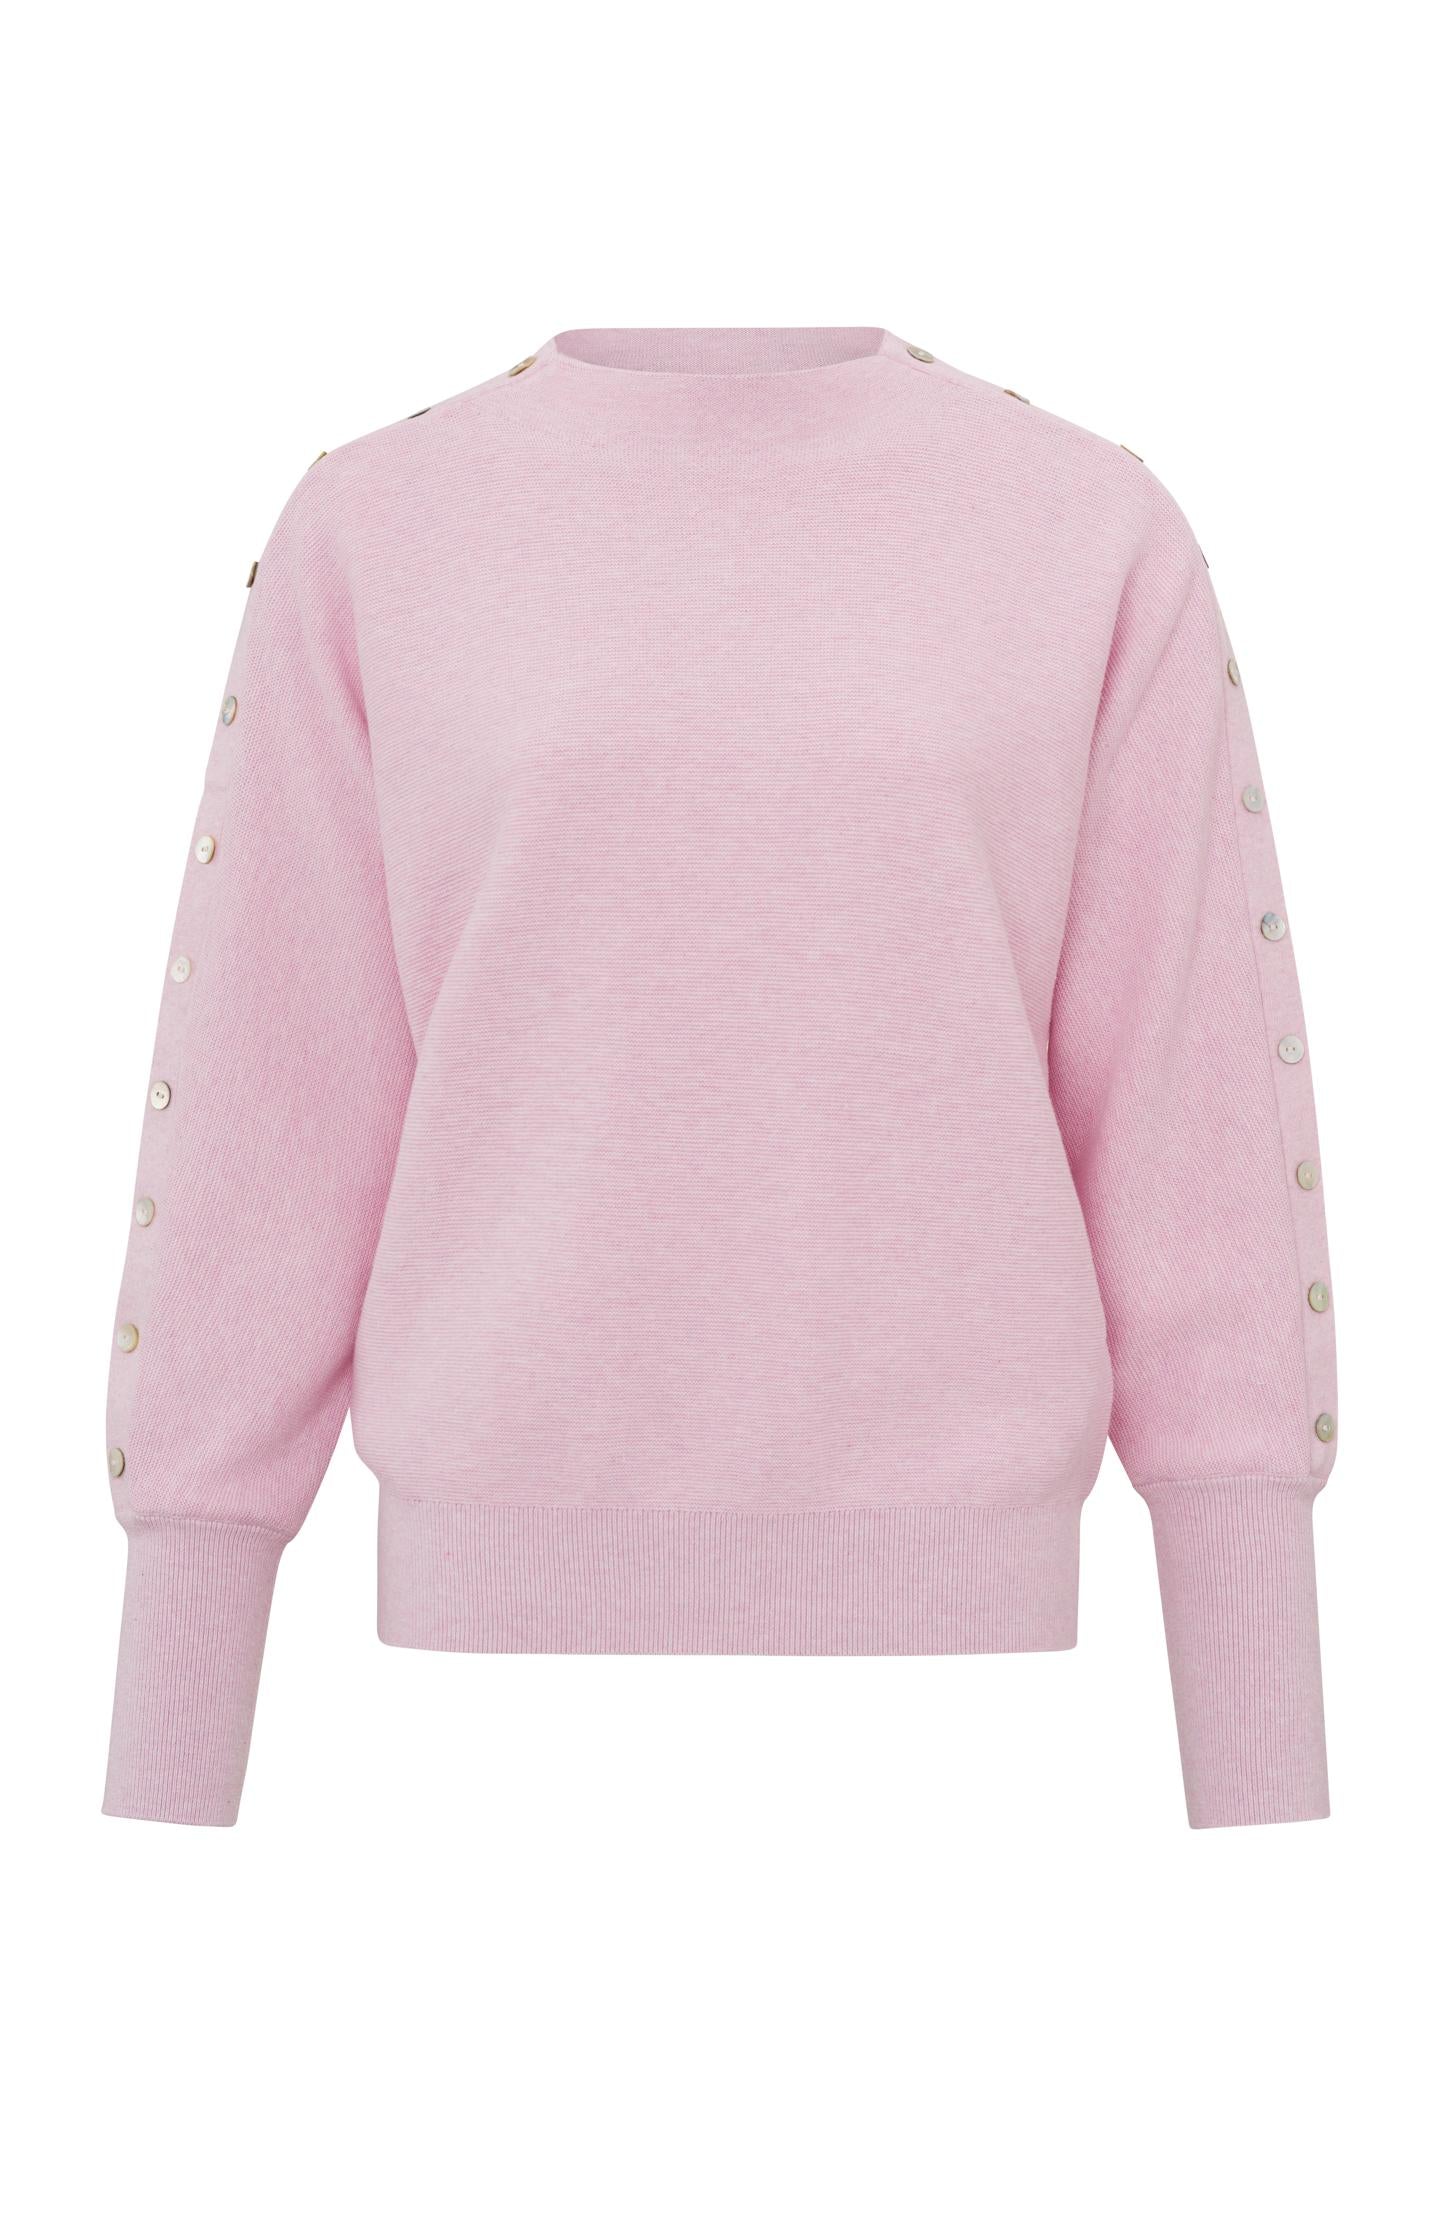 Boatneck Sweater in Lady Pink Melange